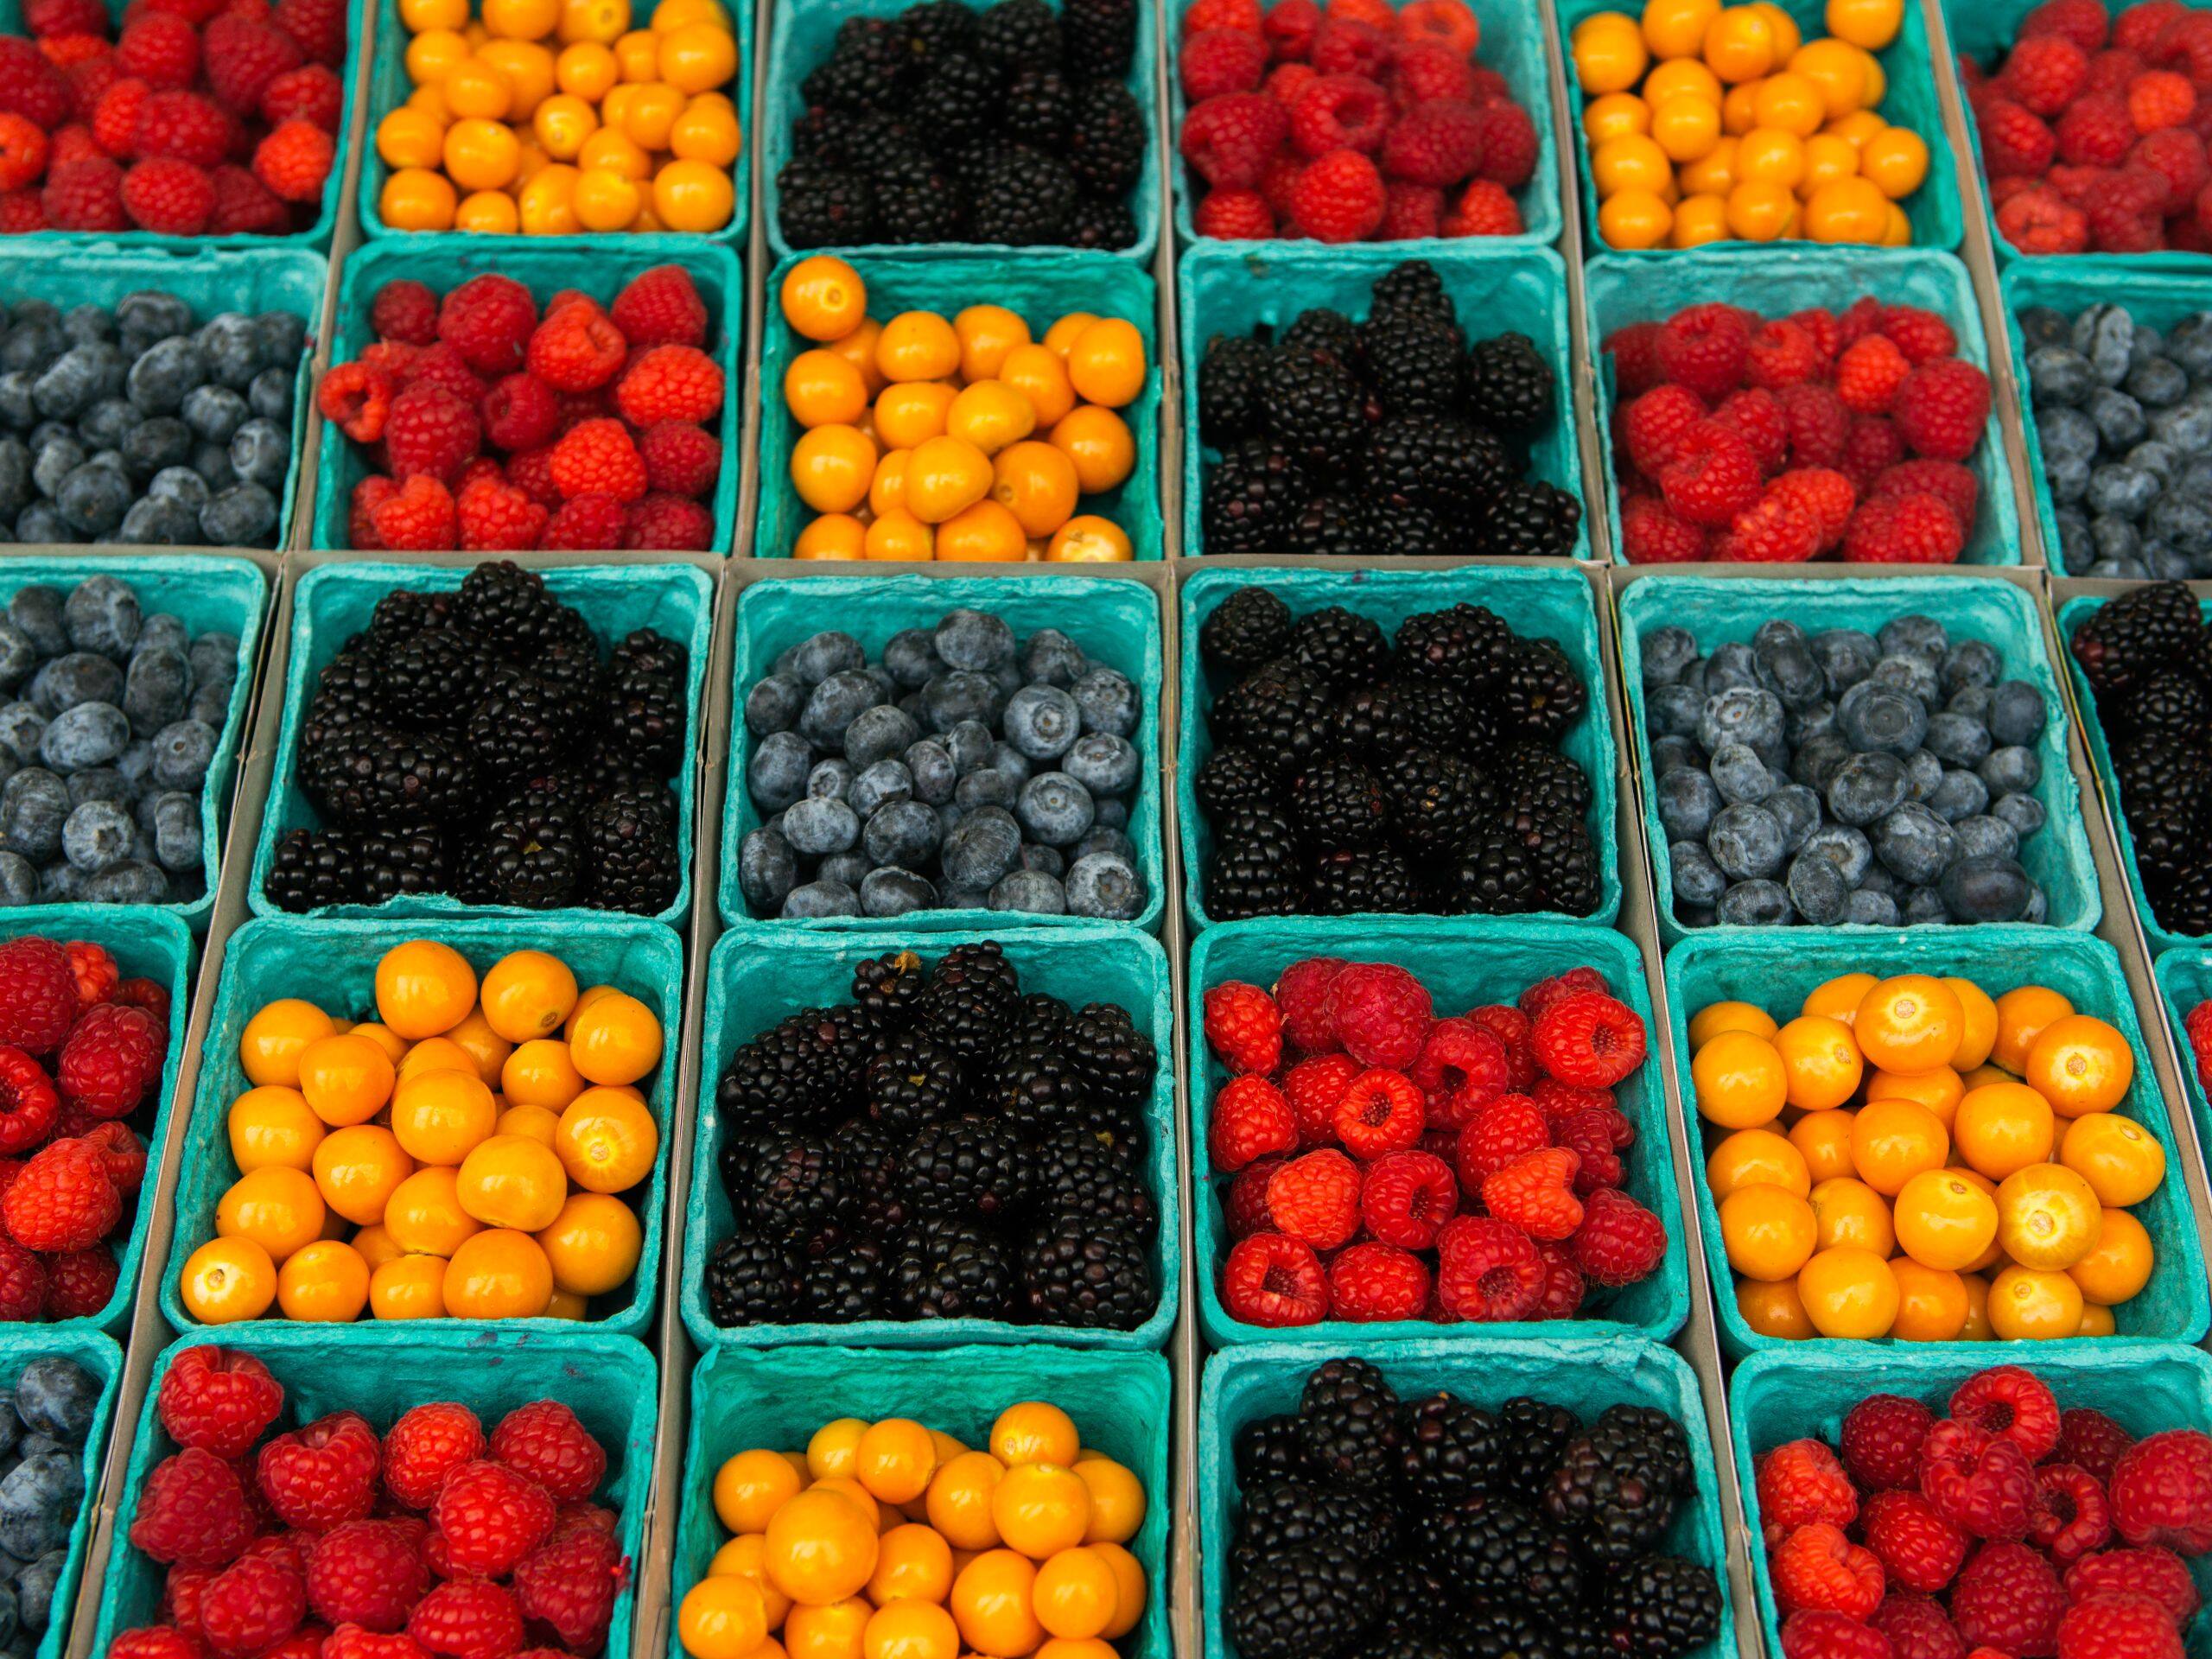 Global HY_P254 Los Angeles Farmers Market Berries